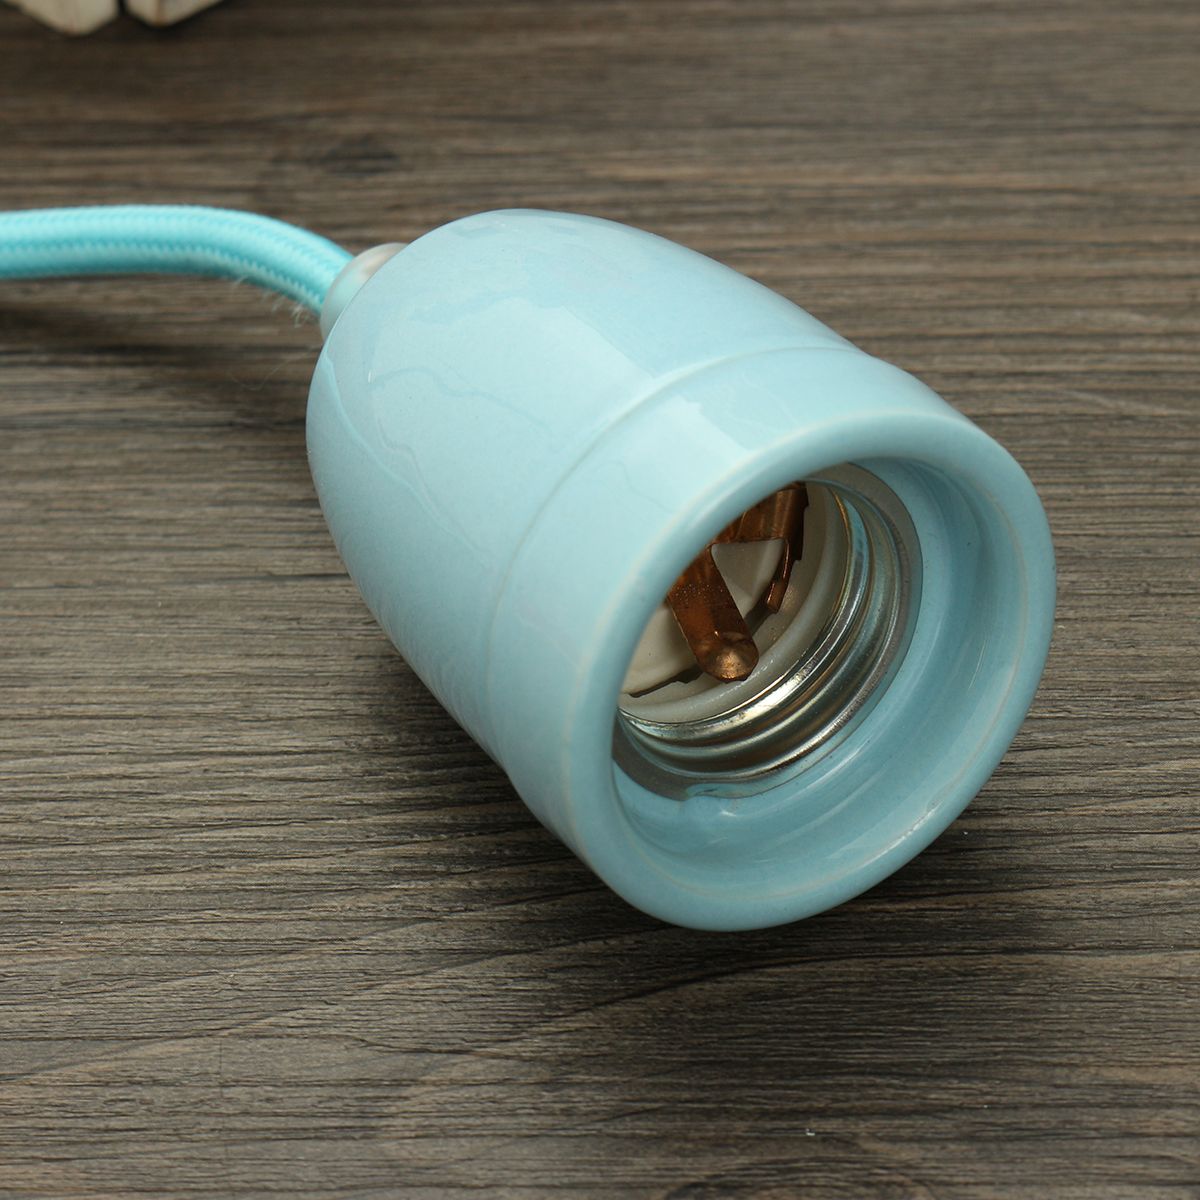 E27-Vintage-Ceramic-Antique-Retro-Ceiling-Pendant-Bulb-Adapter-Lamp-Holder-1414590